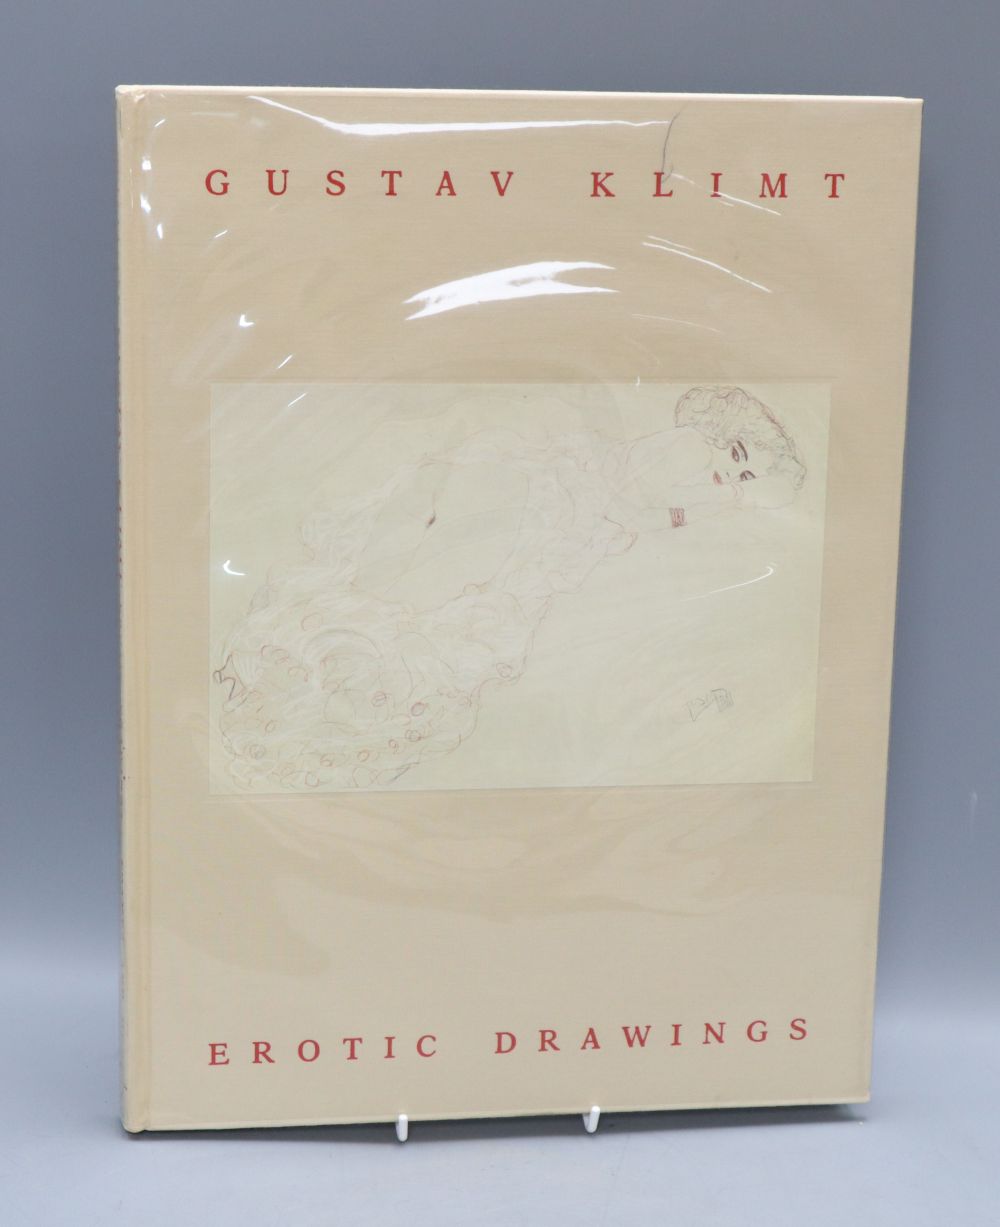 Hofstatter, Gustav Klimt, one volume, Thames & Hudson